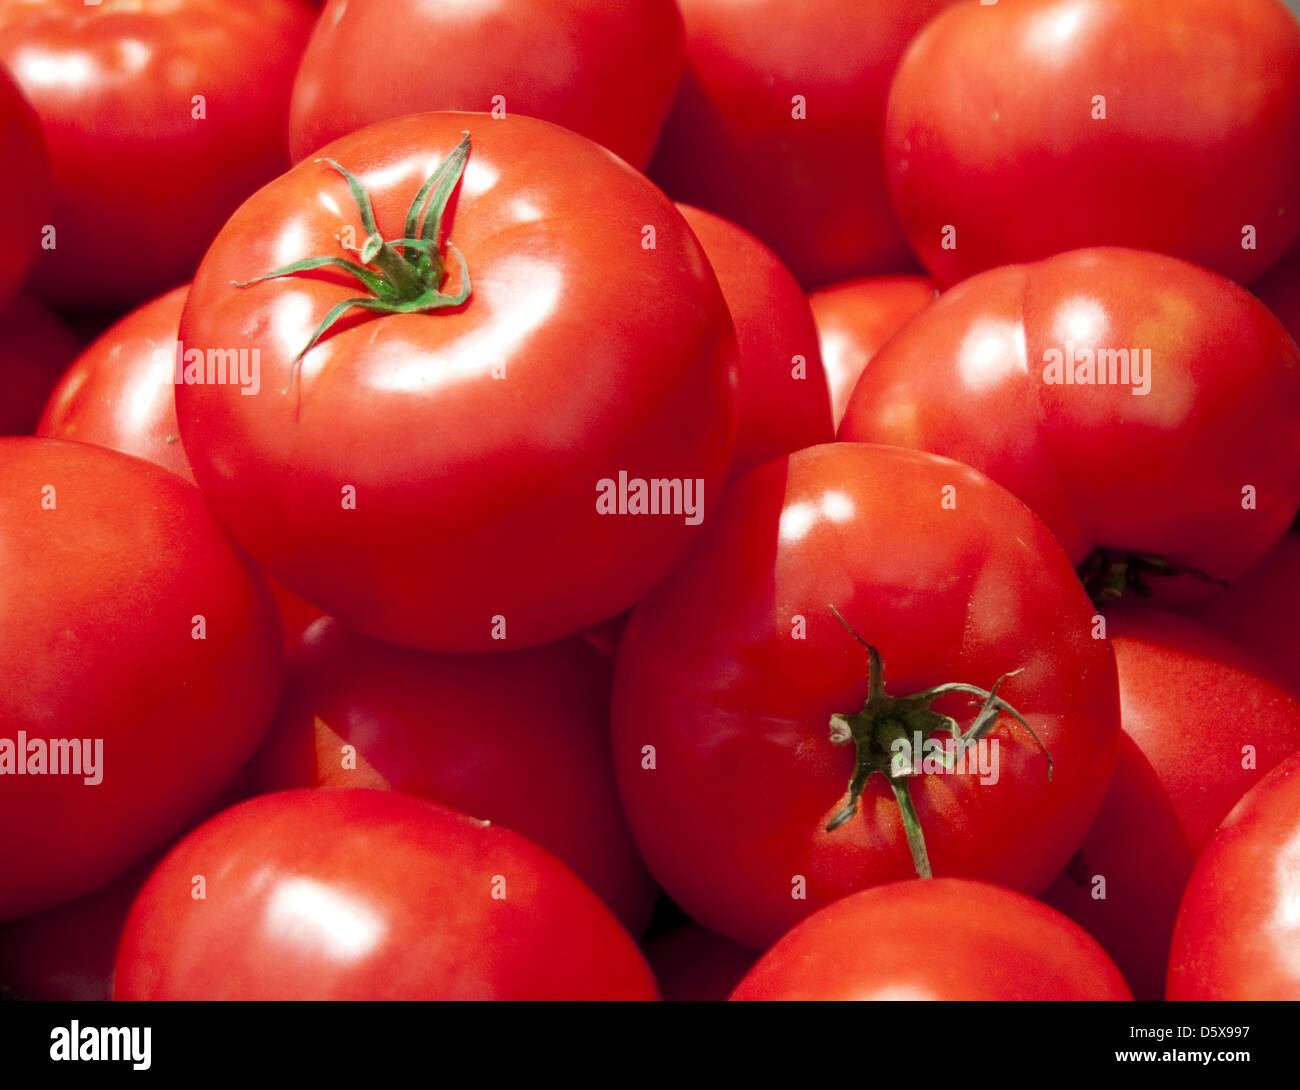 Tomatoes set four Stock Photo